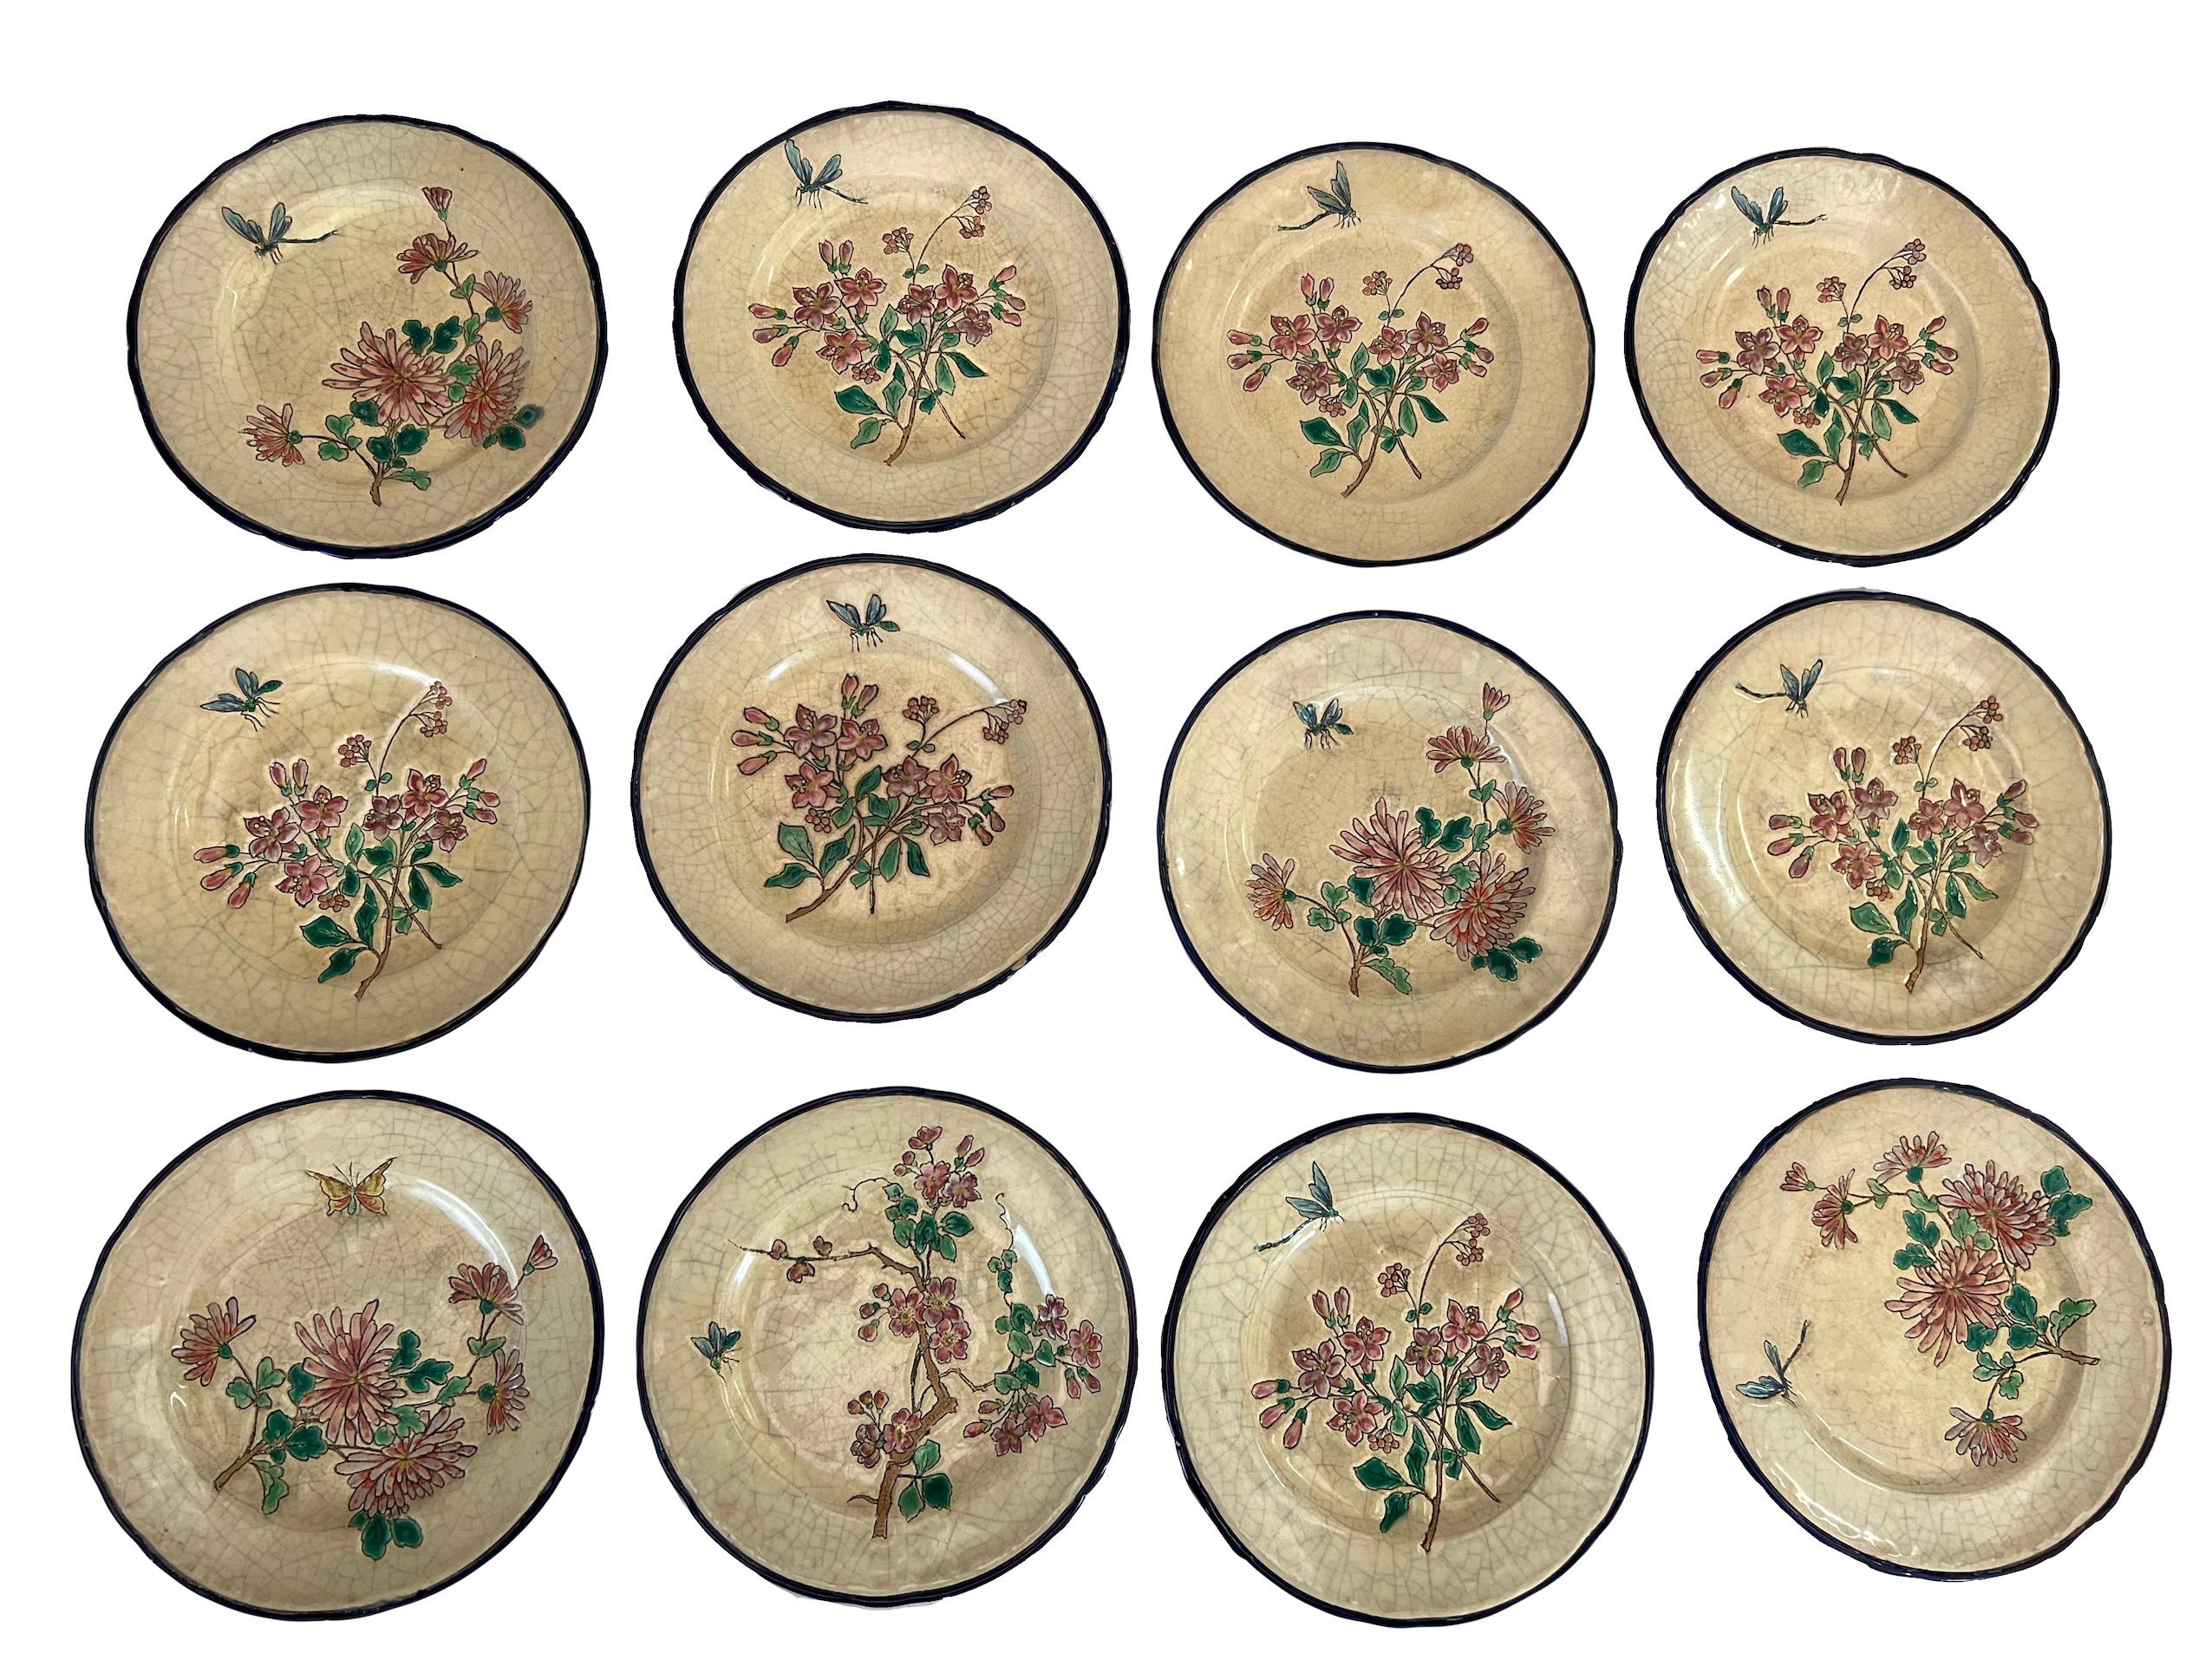 Das Ensemble besteht aus 12 Assietten zum Dessert in Longwy-Emaux. Jedes Assiette ist einzigartig und zeigt ein Blumenmuster in Begleitung eines Insekts in einem japanischen Stil. Sie sind raffiniert dekoriert und können zur Gestaltung eines